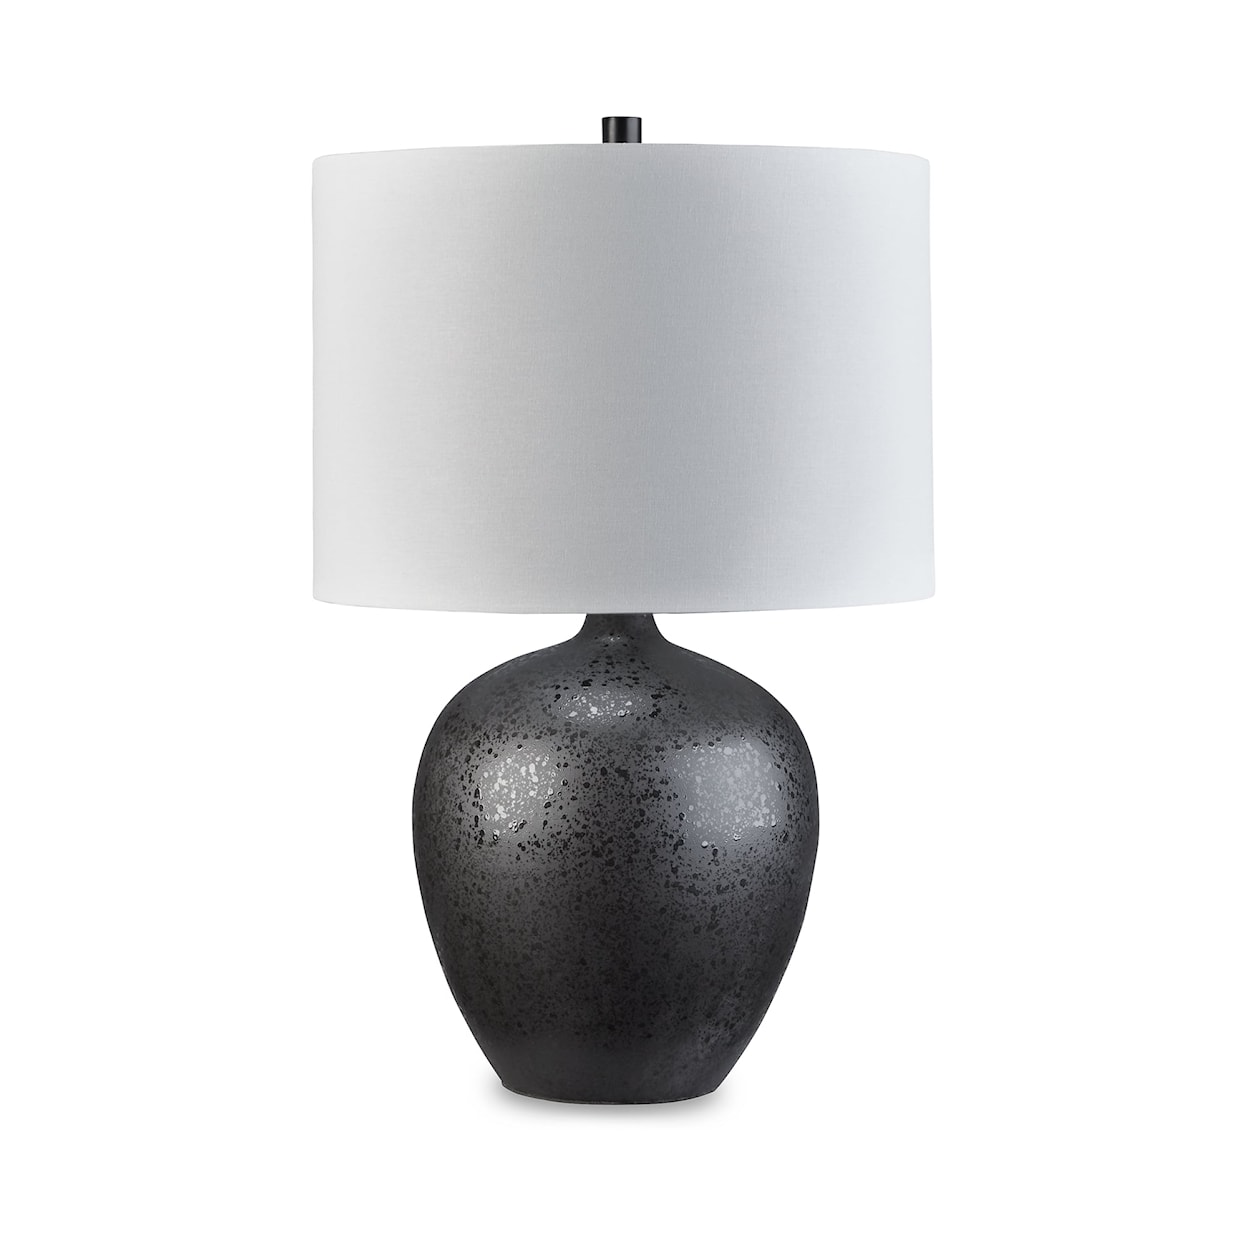 Ashley Furniture Signature Design Ladstow Ceramic Table Lamp